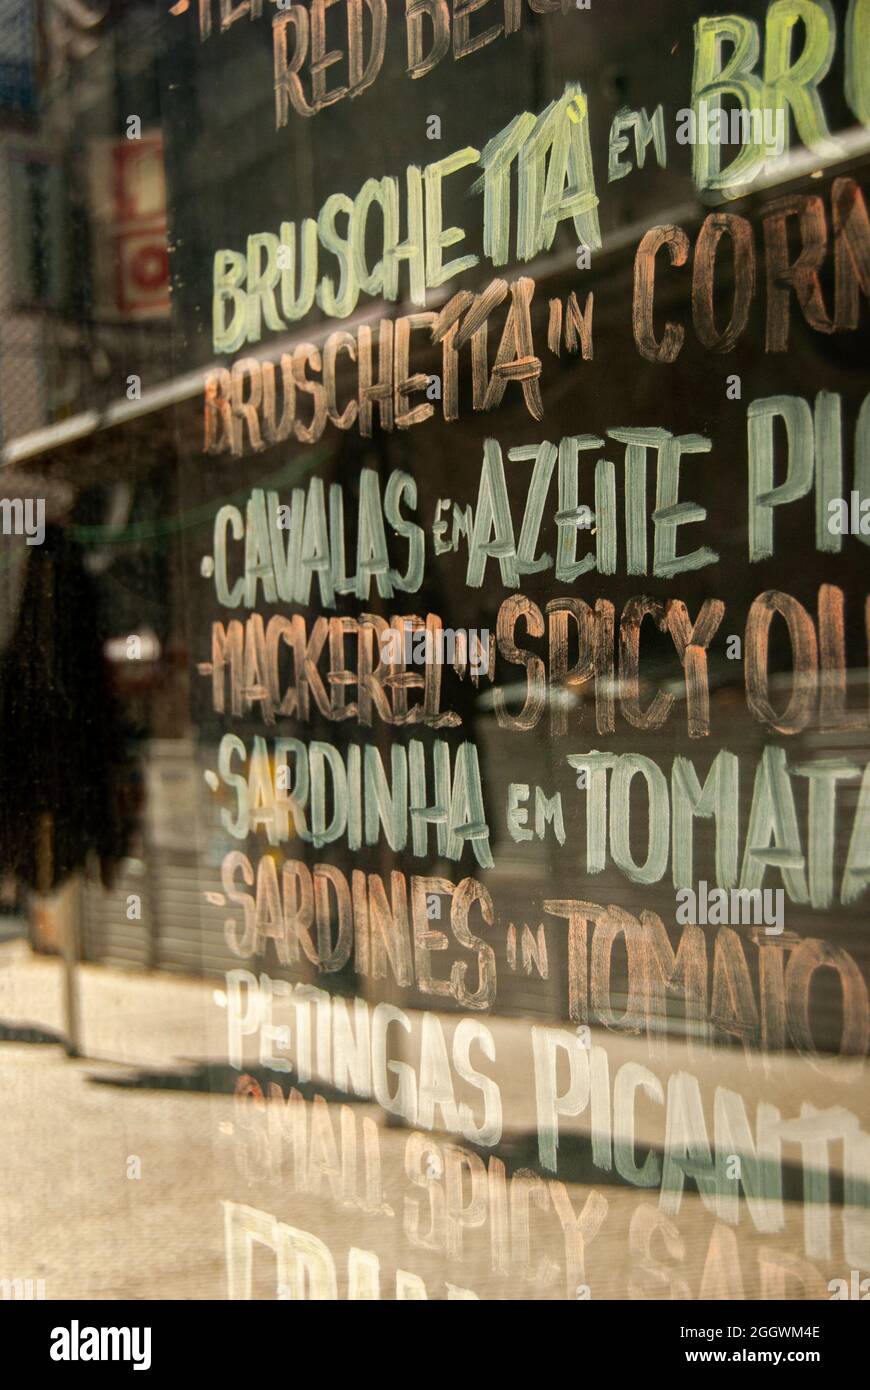 Ein Fenster des portugiesischen Café-Restaurants mit Namen traditioneller Gerichte in portugiesischer und englischer Sprache - Vertikal, selektiver Fokus Stockfoto